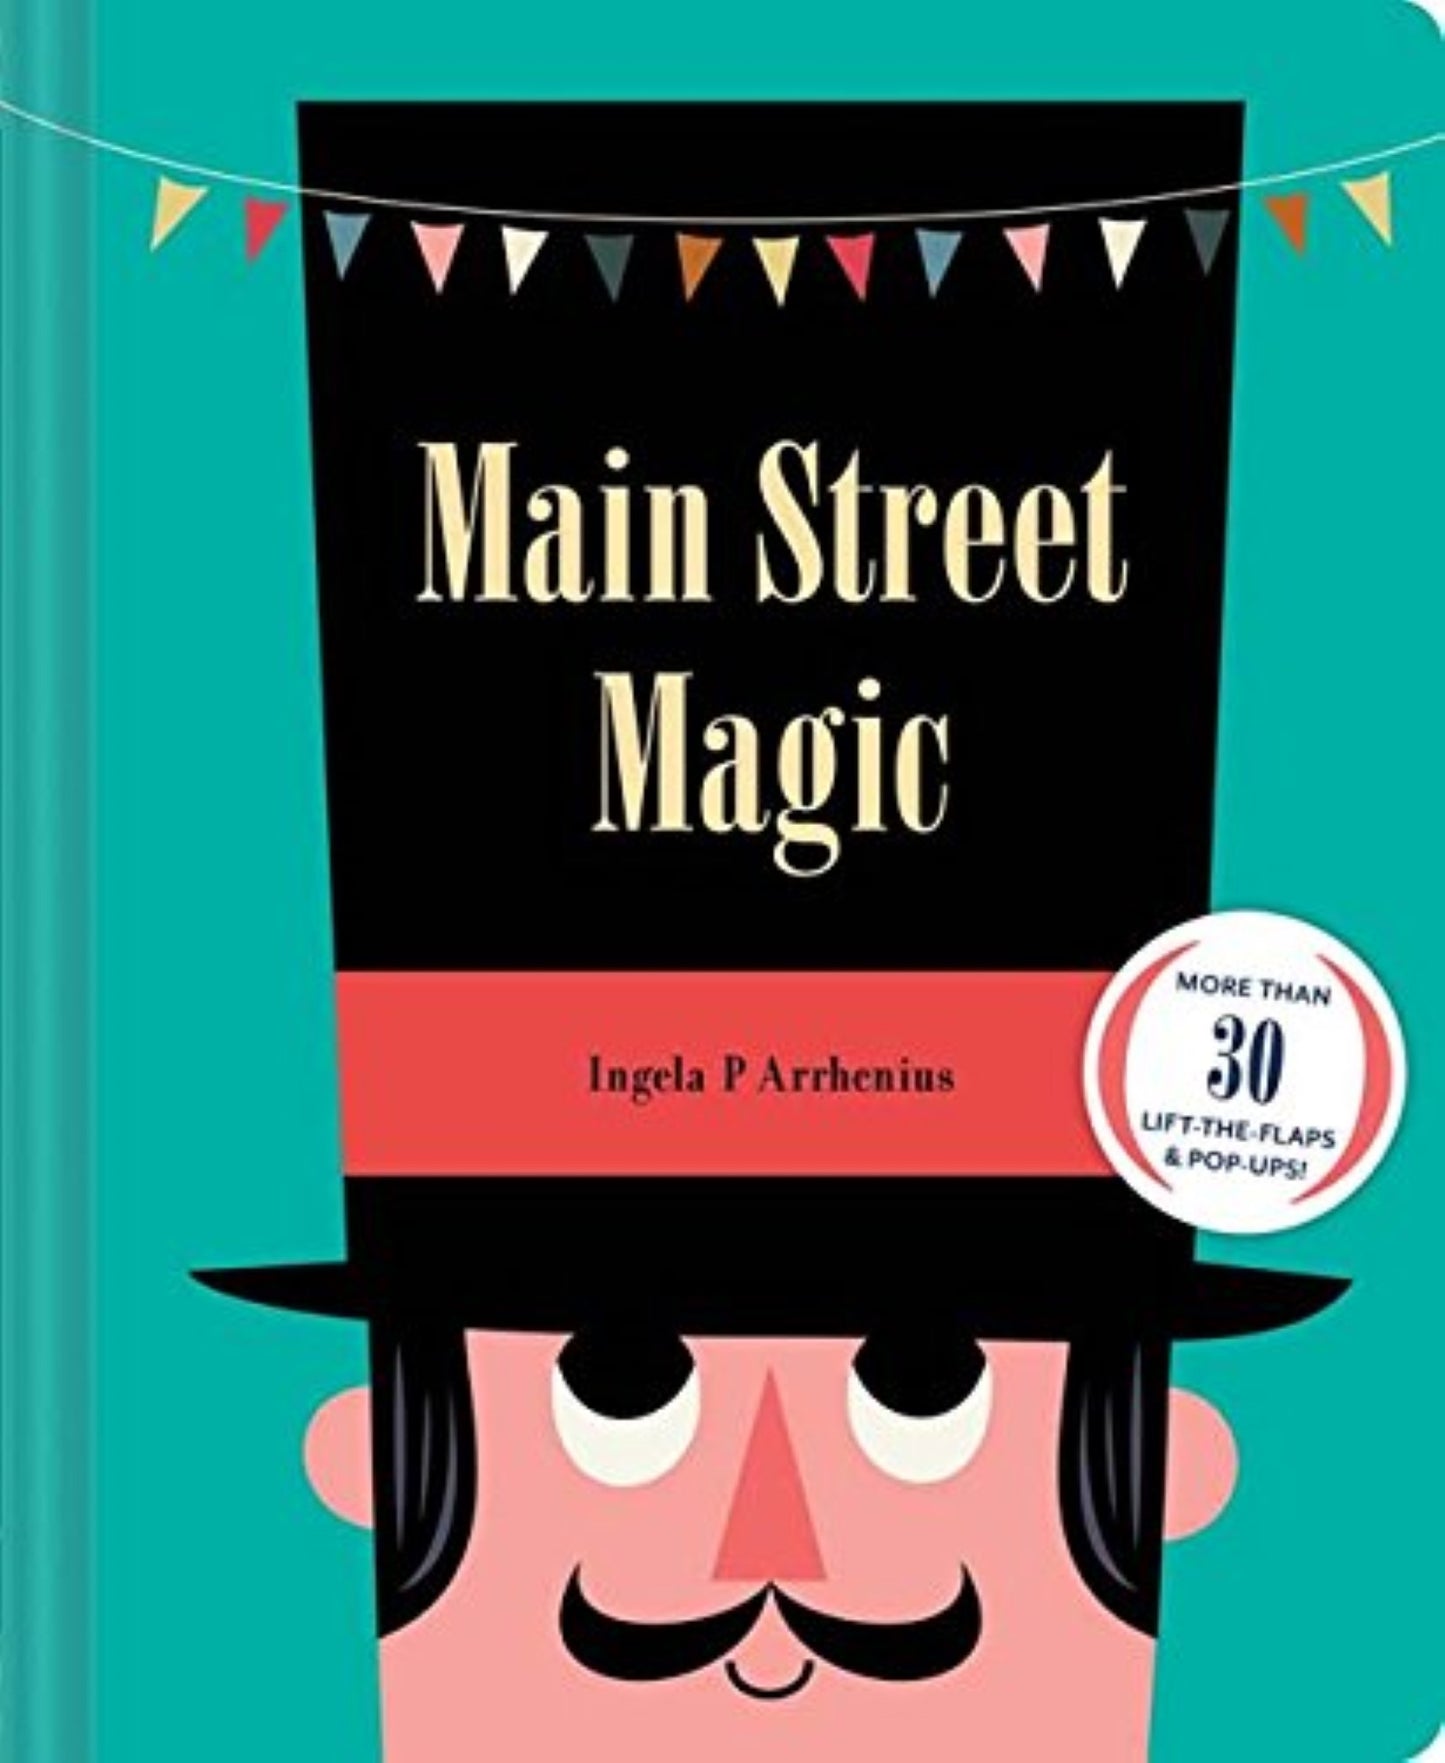 Main Street Magic - Ingela P Arrhenius